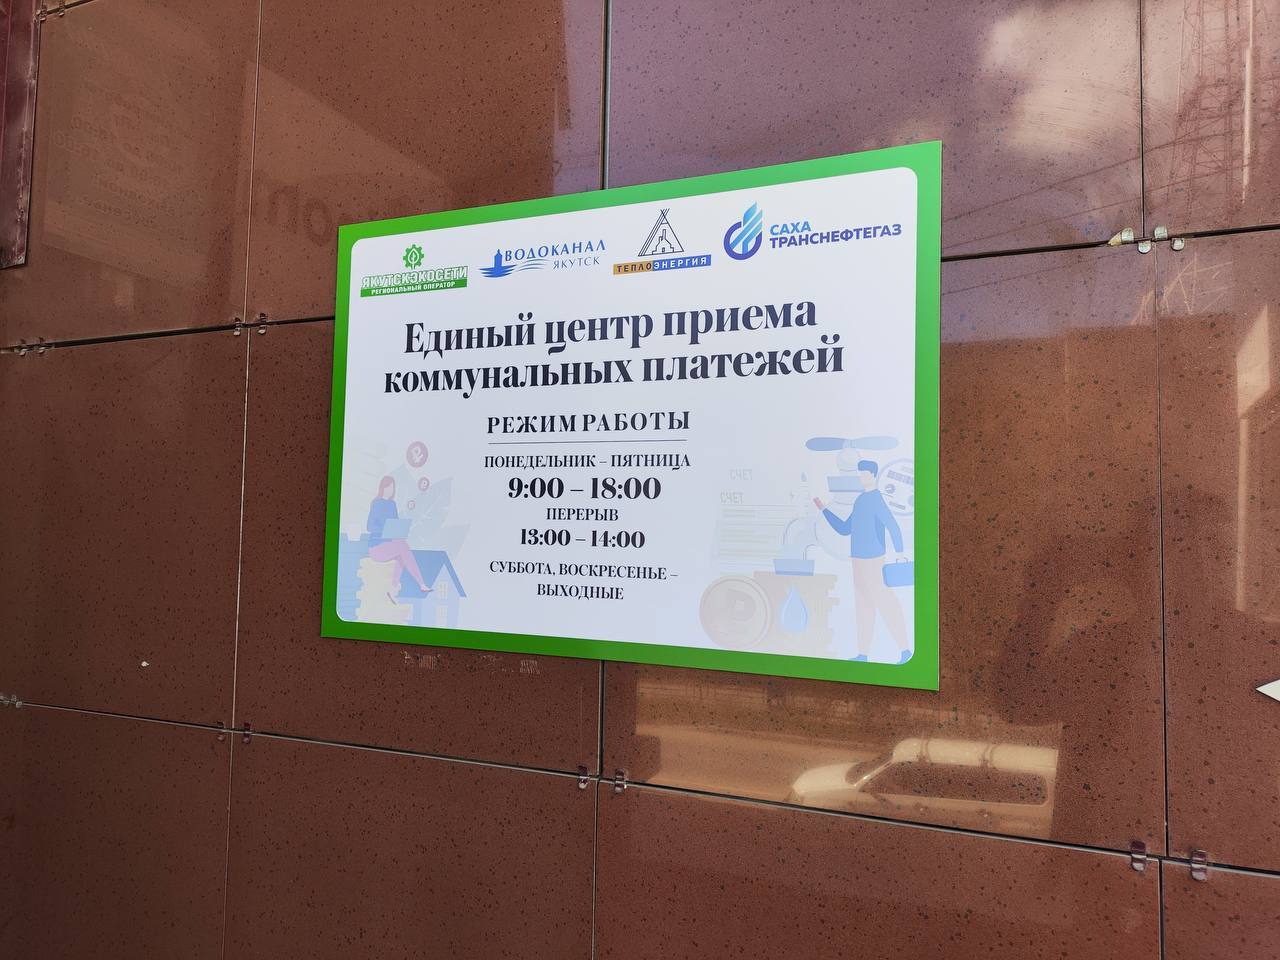 «Сахатранснефтегаз» открыл в Якутске новый пункт приема платежей за газ и техобслуживание